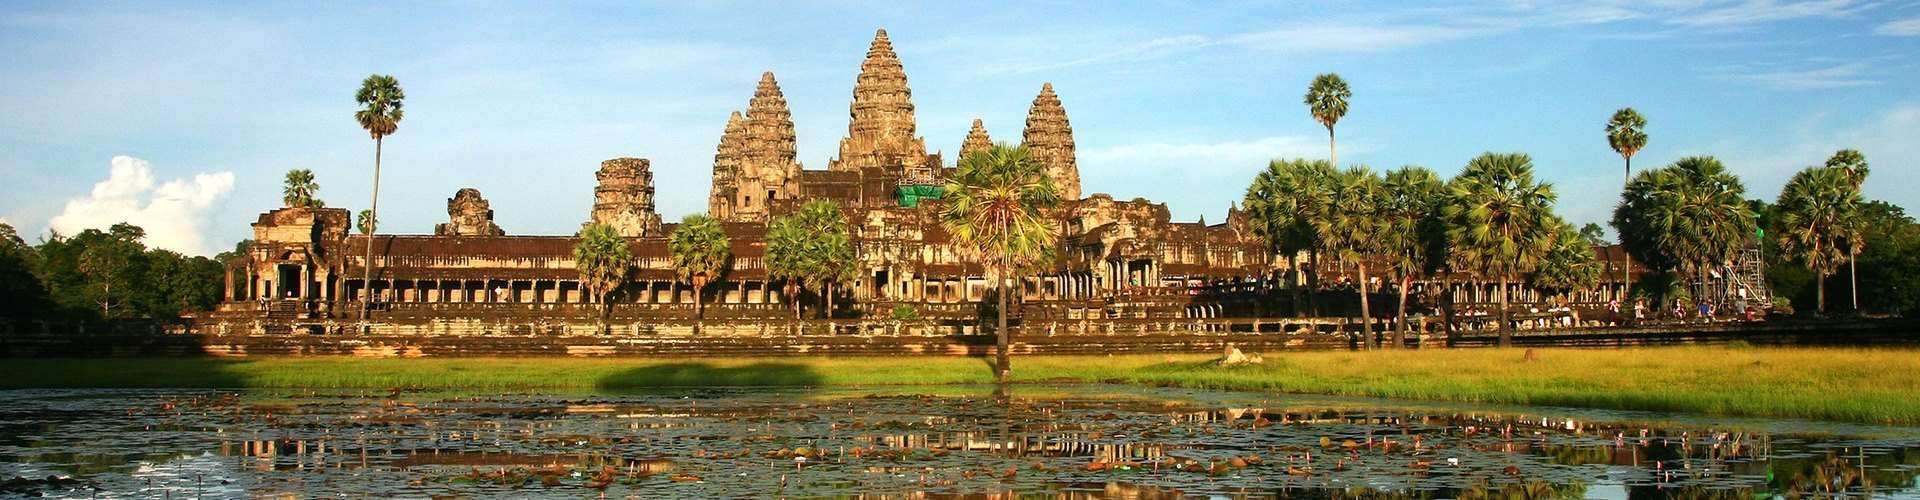 Top destination in Cambodia